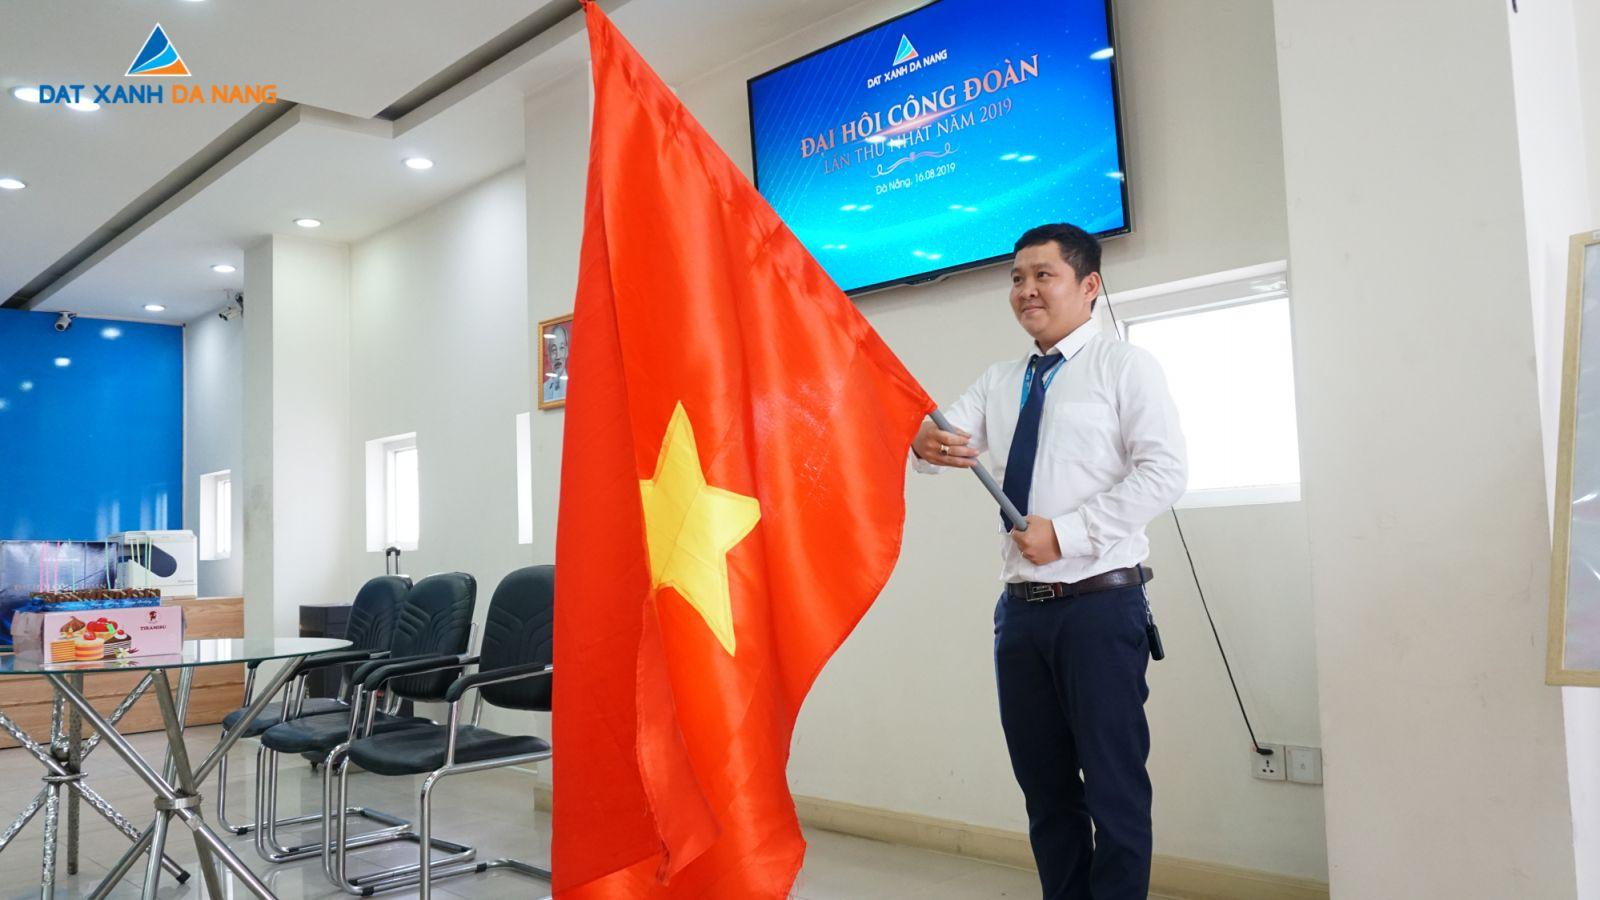 NHỮNG KHOẢNH KHẮC ẤN TƯỢNG TRONG CHƯƠNG TRÌNH NỘI BỘ CỦA ĐẤT XANH ĐÀ NẴNG - Viet Nam Smart City